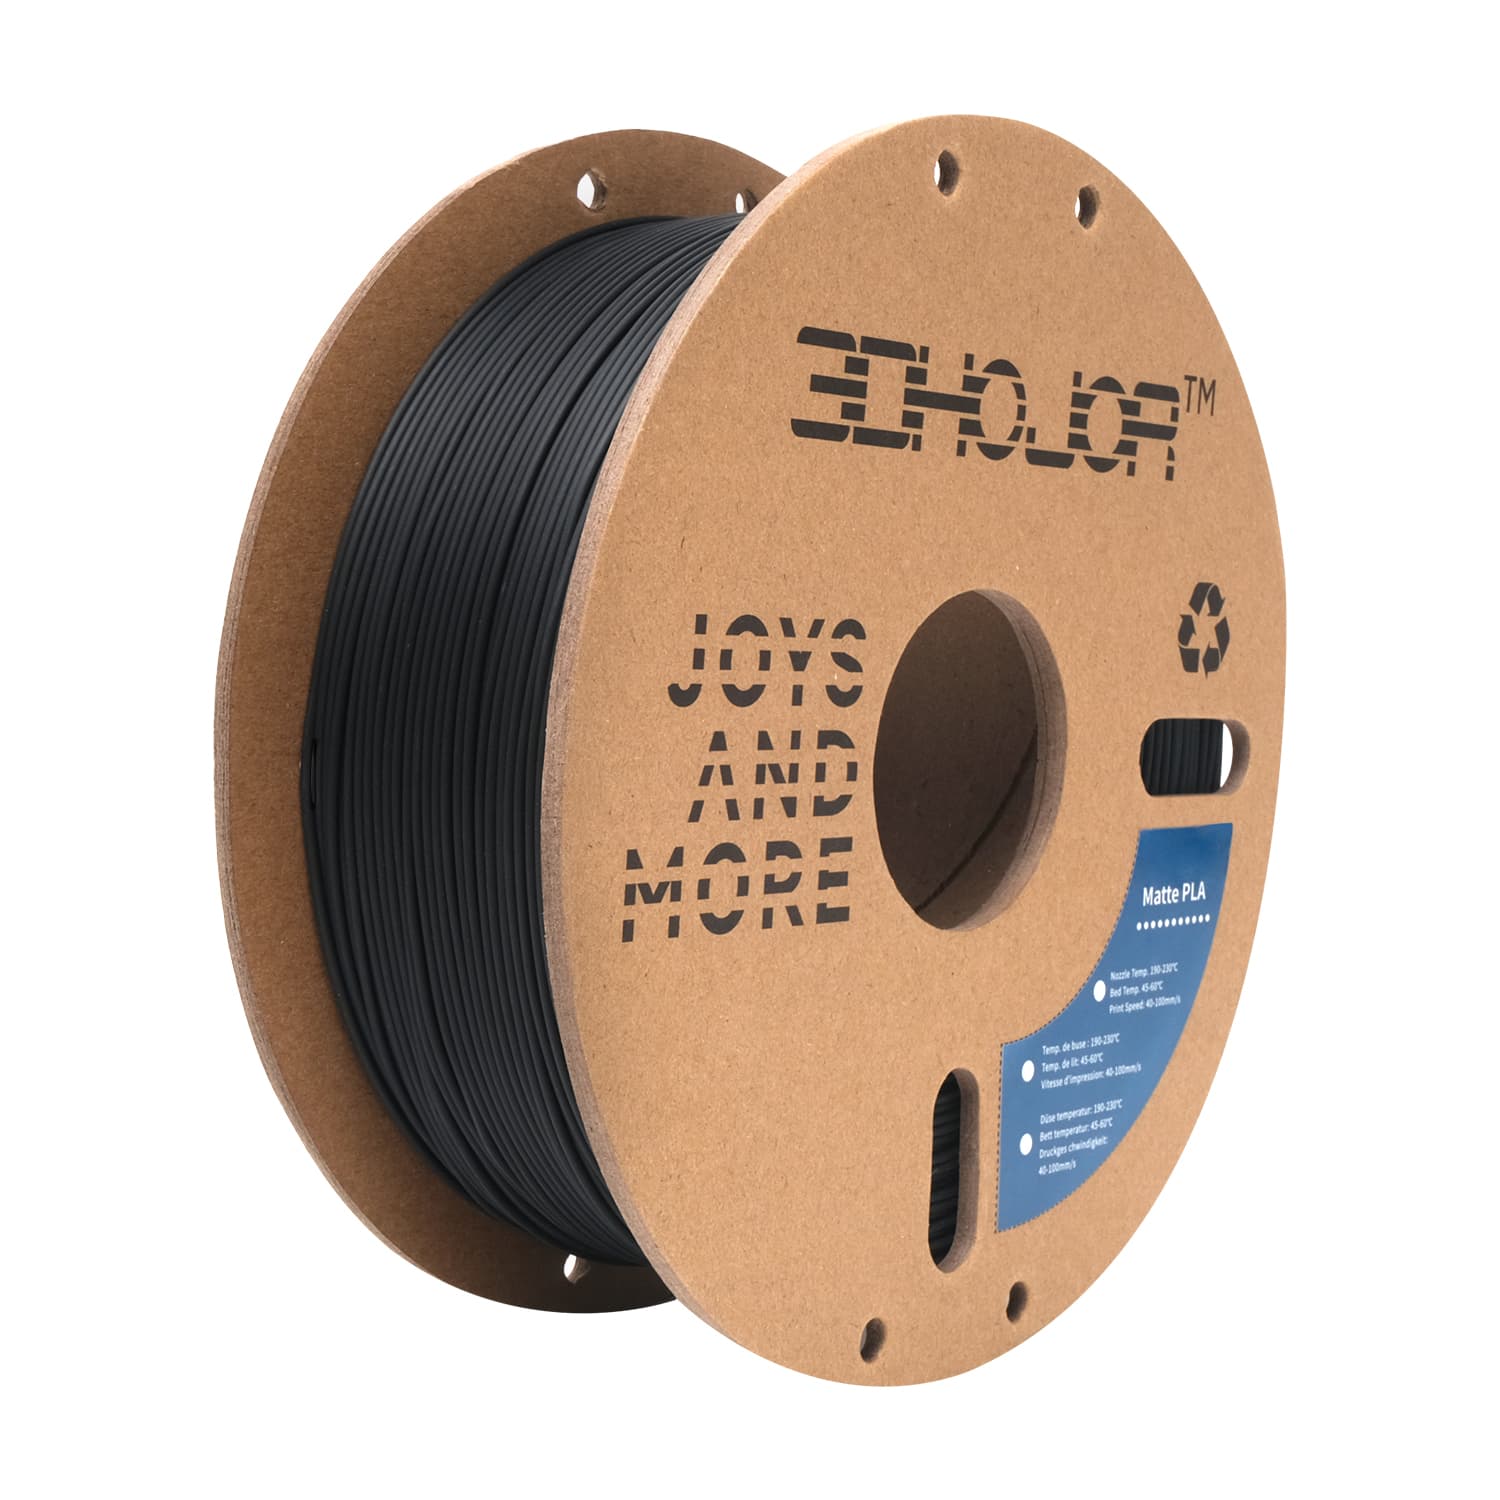 3DHoJor Matte PLA Filament 1.75mm Black, PLA 3D Printer Filament, 1kg Spool (2.2lbs) PLA Filament